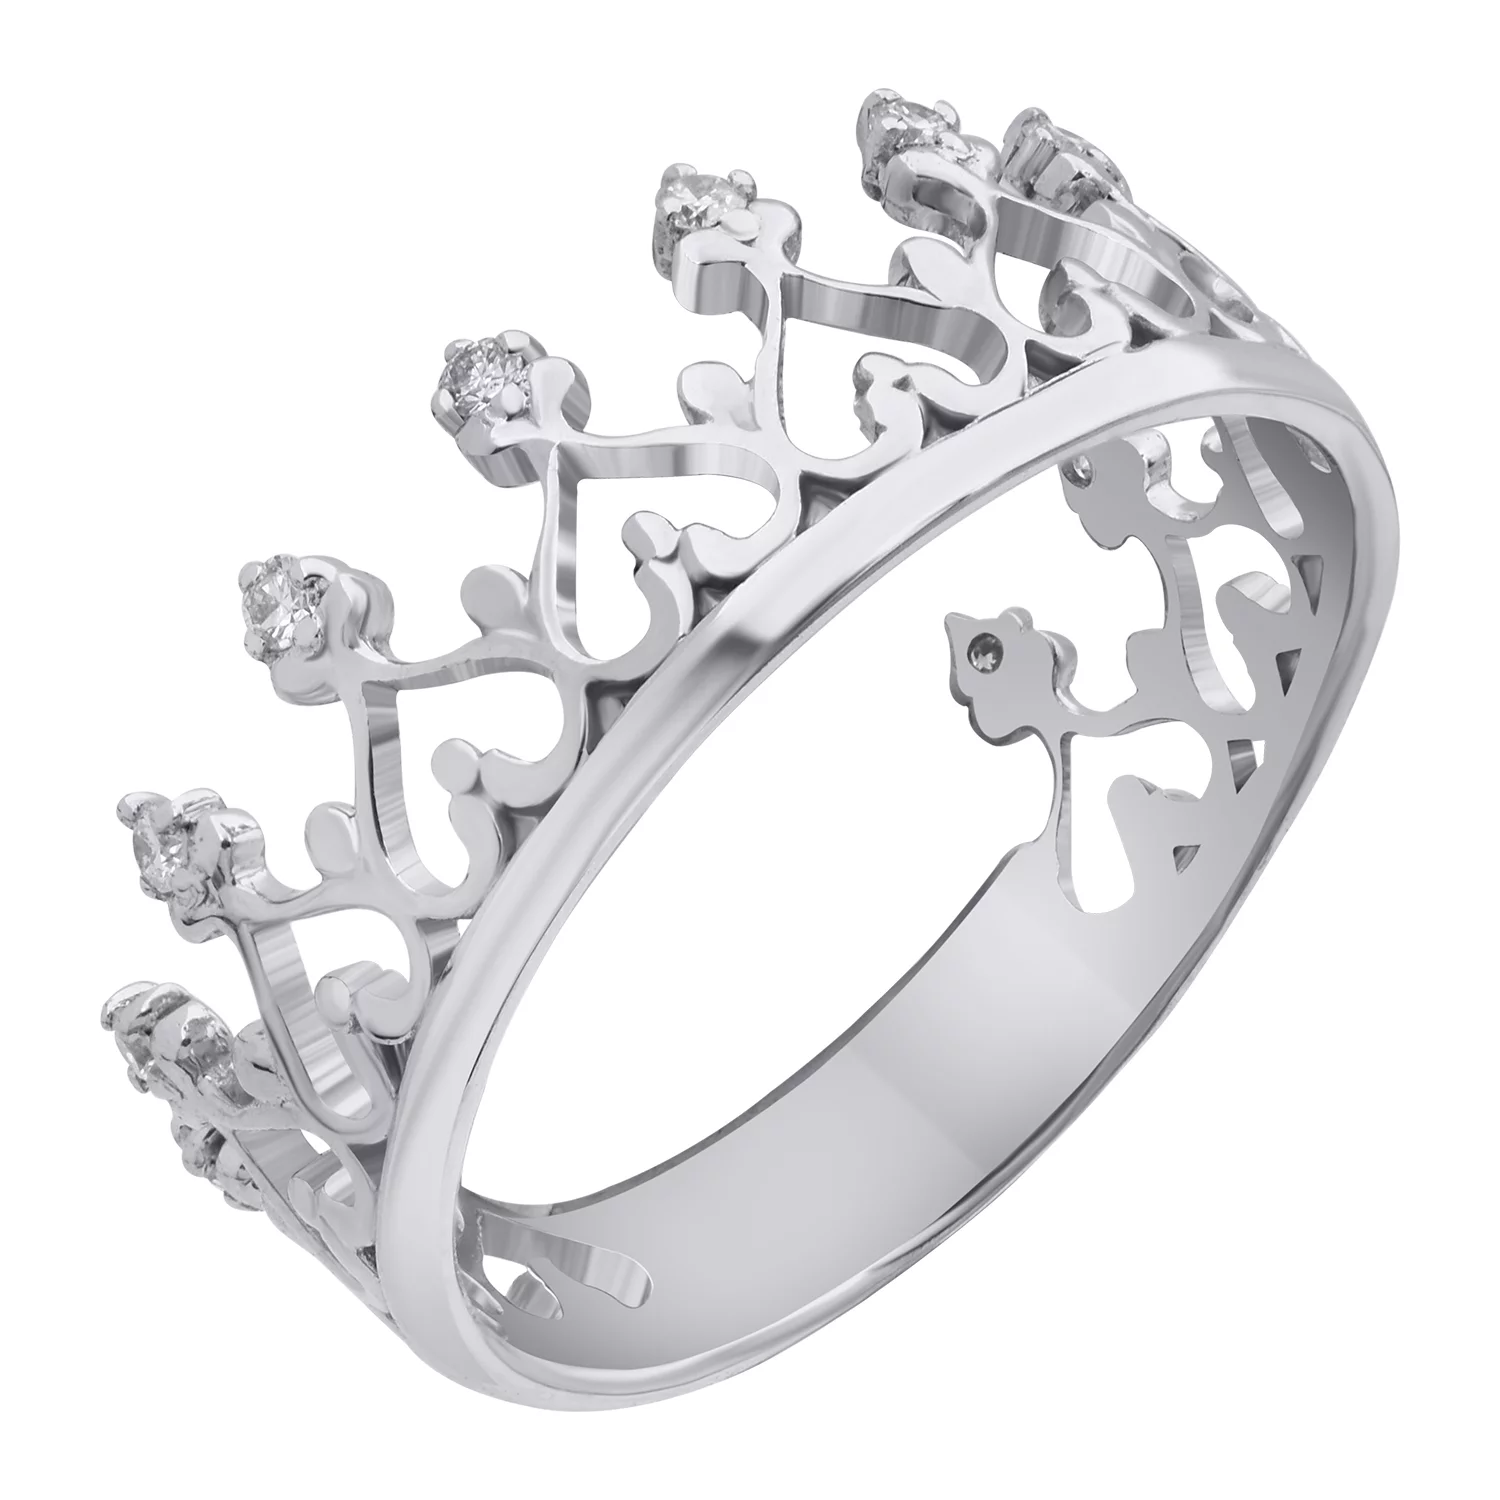 Кольцо Корона из белого золота с бриллиантами. Артикул 1125/1б: цена, отзывы, фото – купить в интернет-магазине AURUM